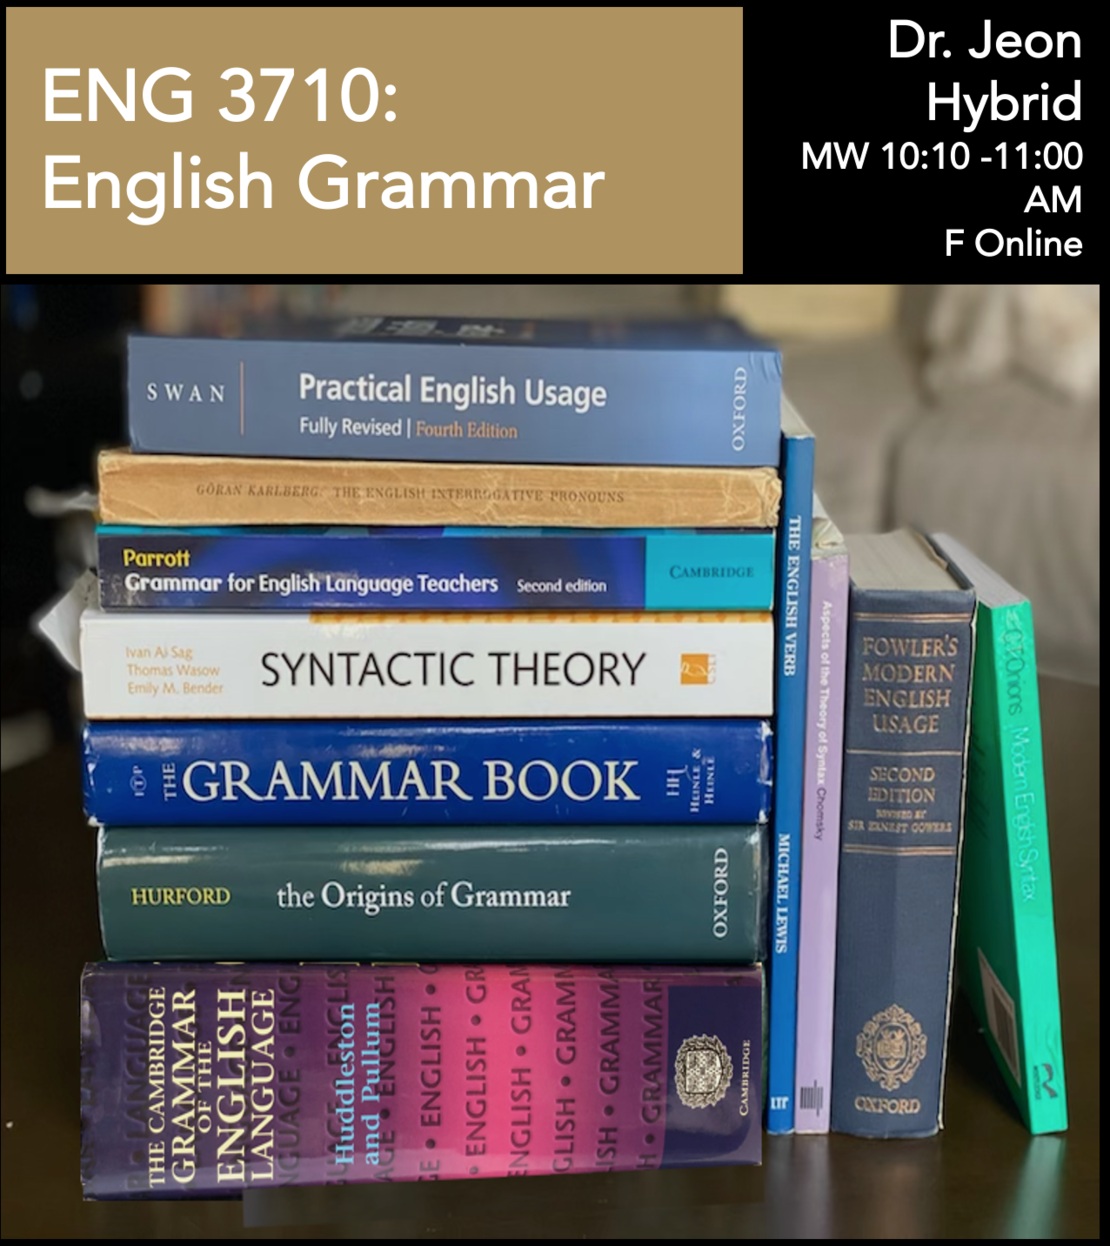 ENG 3710: English Grammar Dr. Jeon Hybrid MW 10:10-11:00 AM F Online